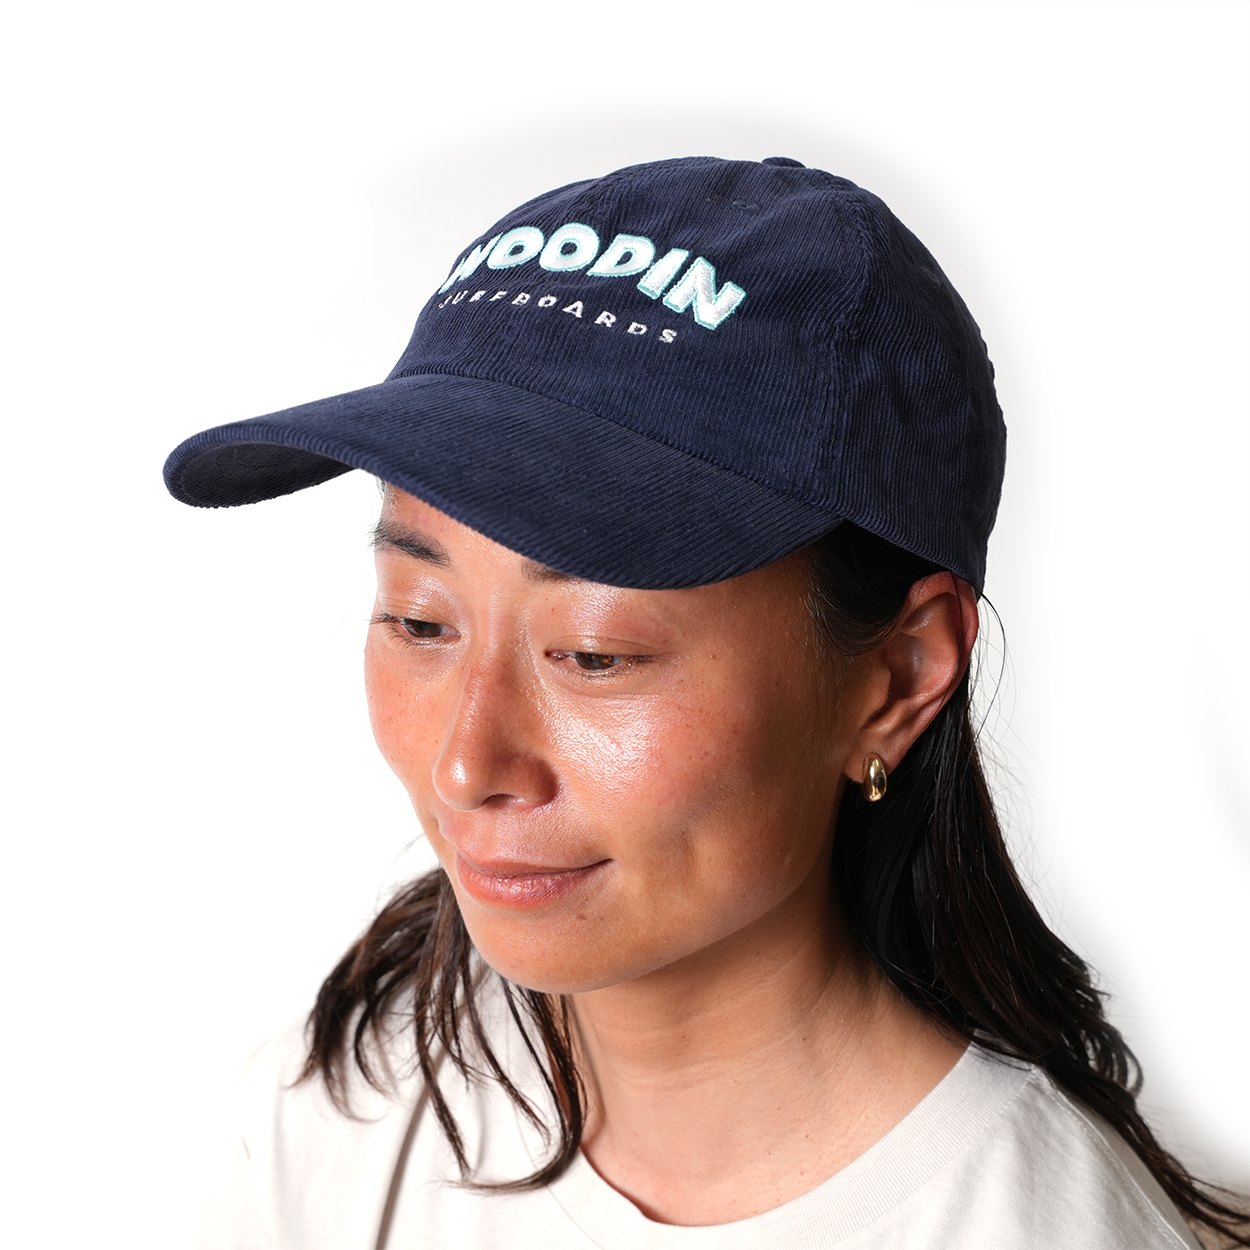 WOODIN CORDUROY HATS / NAVY